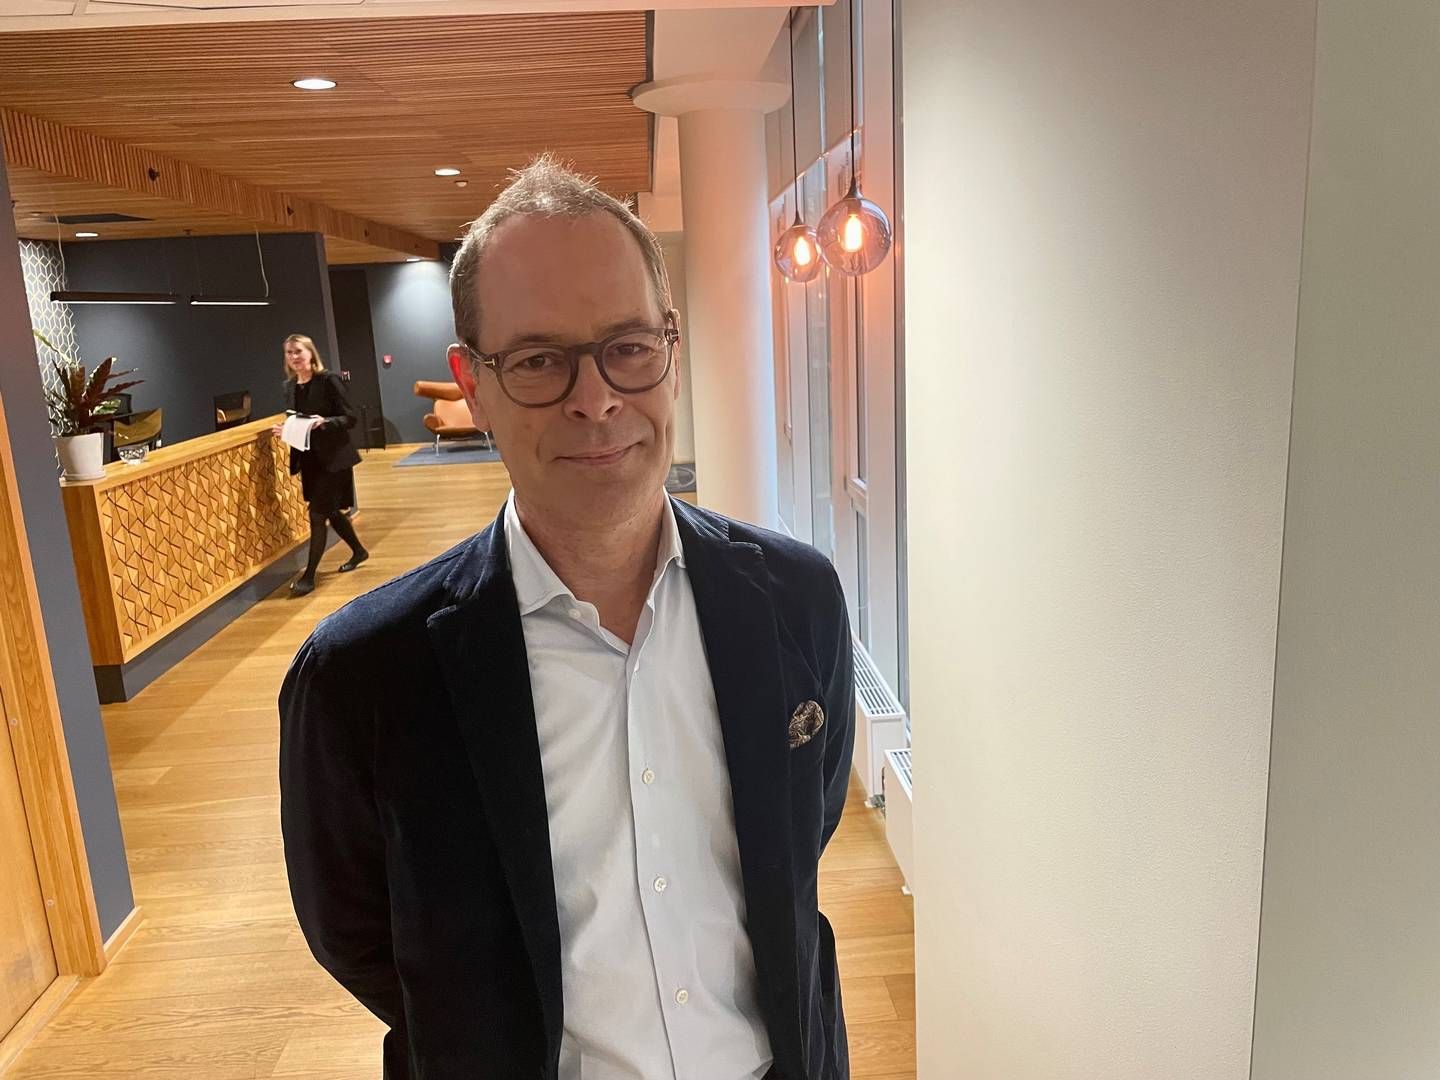 FORNØYD: Martin Olin, administrerende direktør i Bergenbio, sier han er oppmuntret av de foreløpige resultatene som er kommet fra lungekreftstudien. | Foto: Anne Grete Storvik